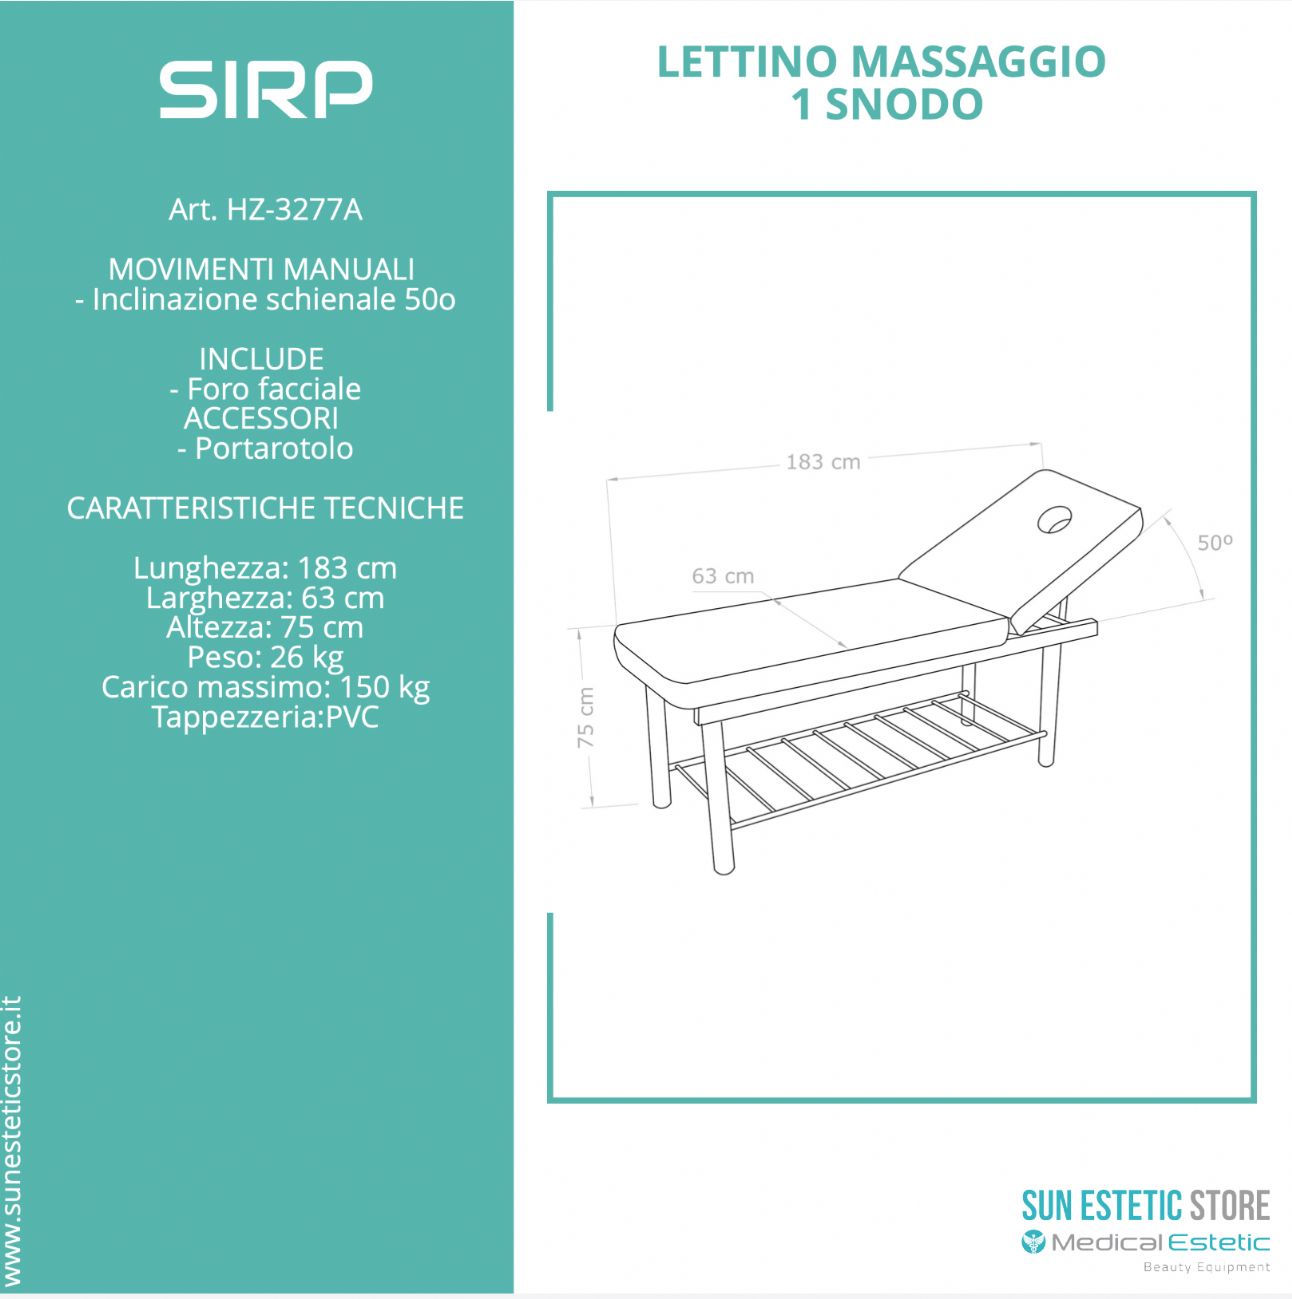 SIRP Lettino massaggio in metallo 1 snodo colore bianco